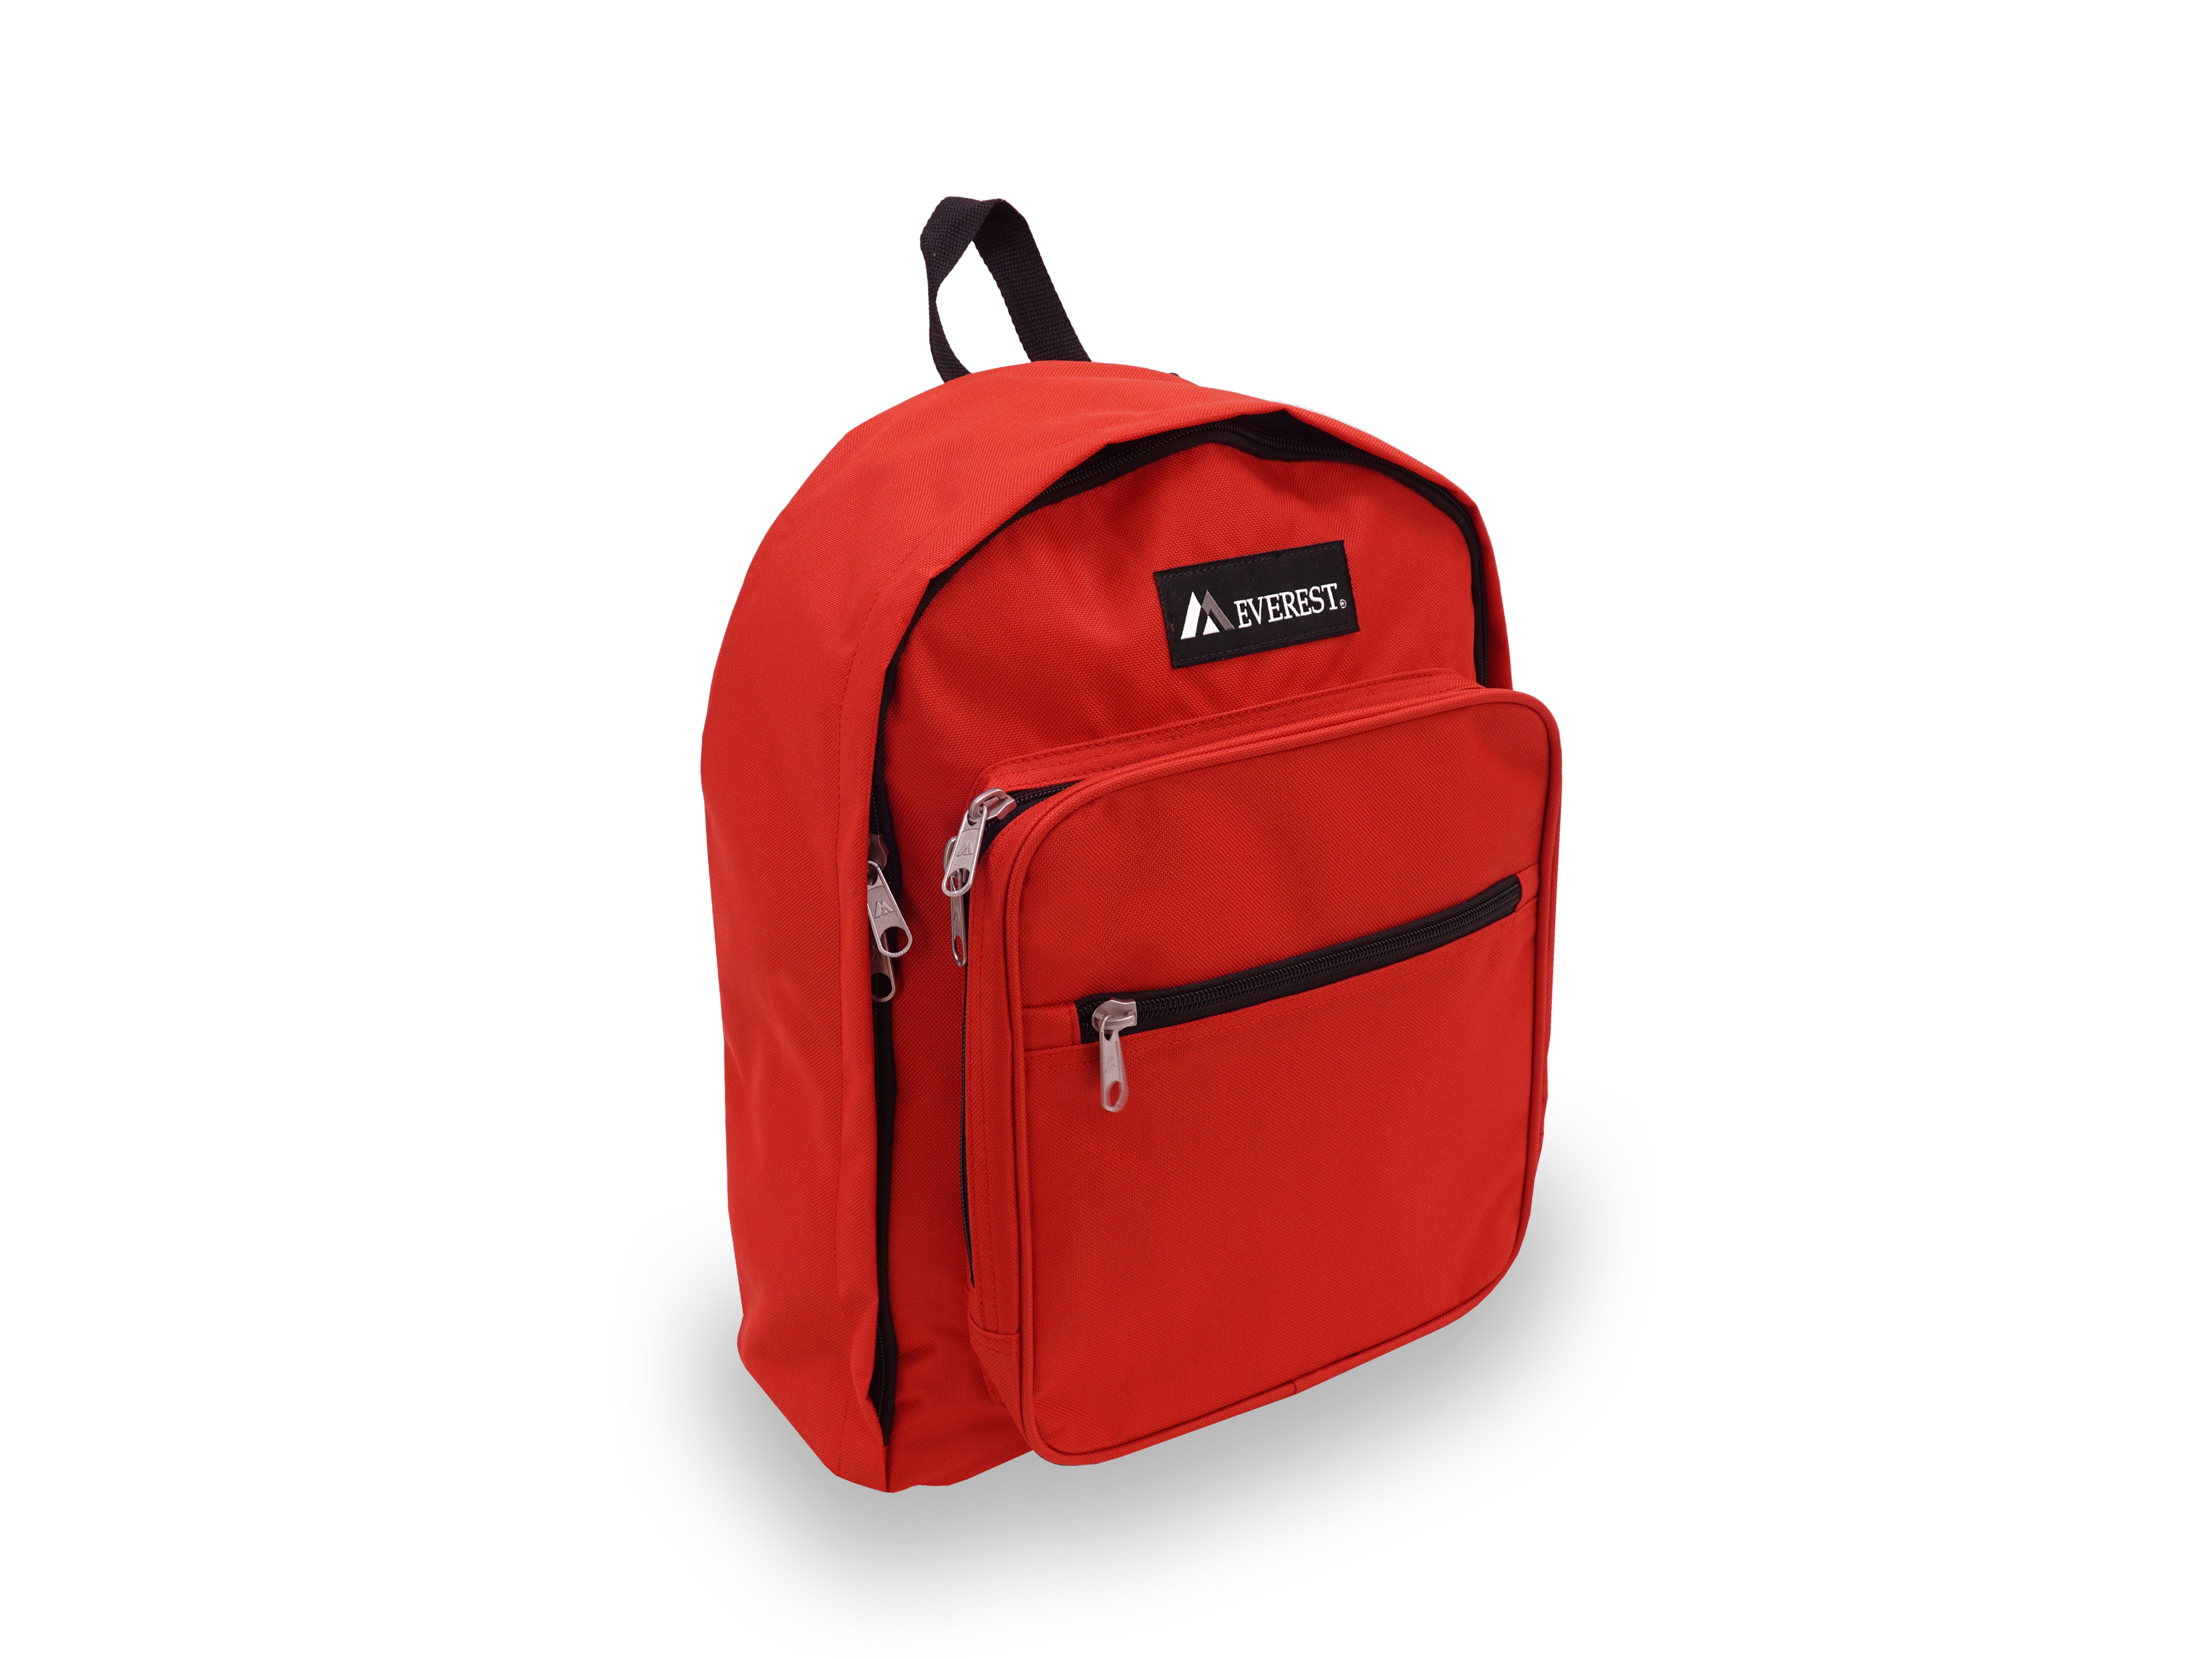 Everest Unisex Standard Backpack, Red - image 2 of 4